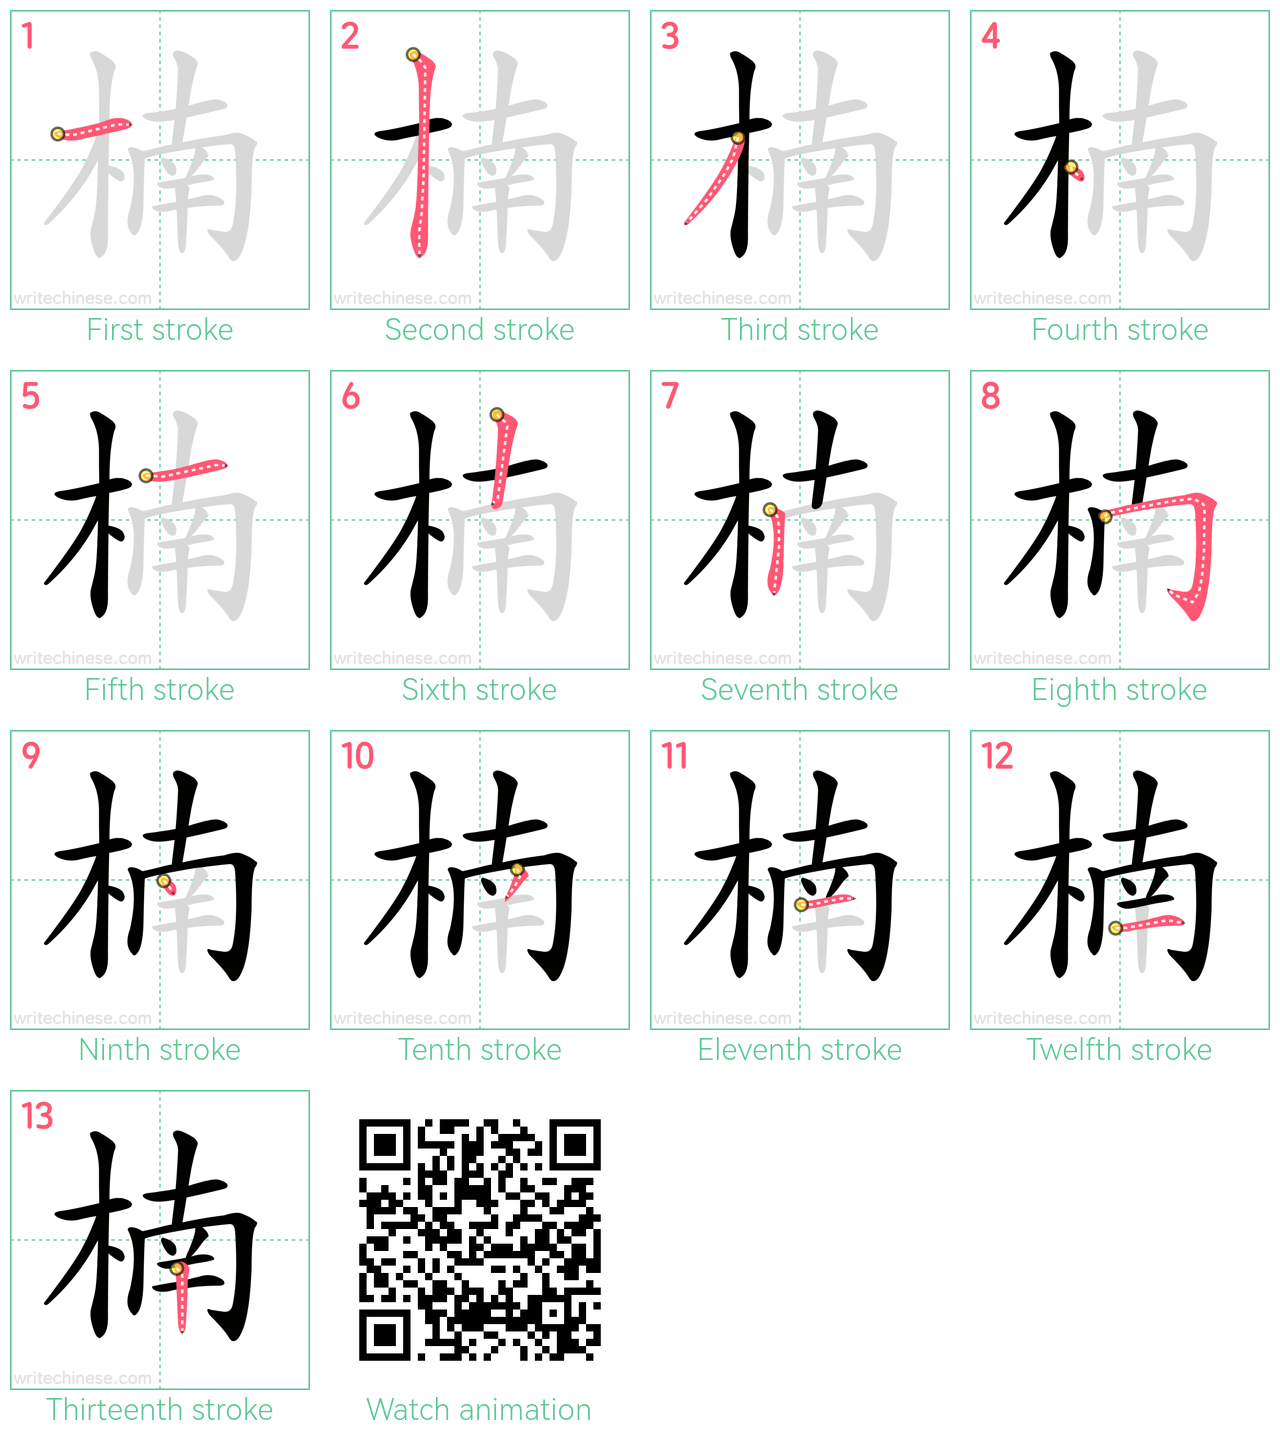 楠 step-by-step stroke order diagrams